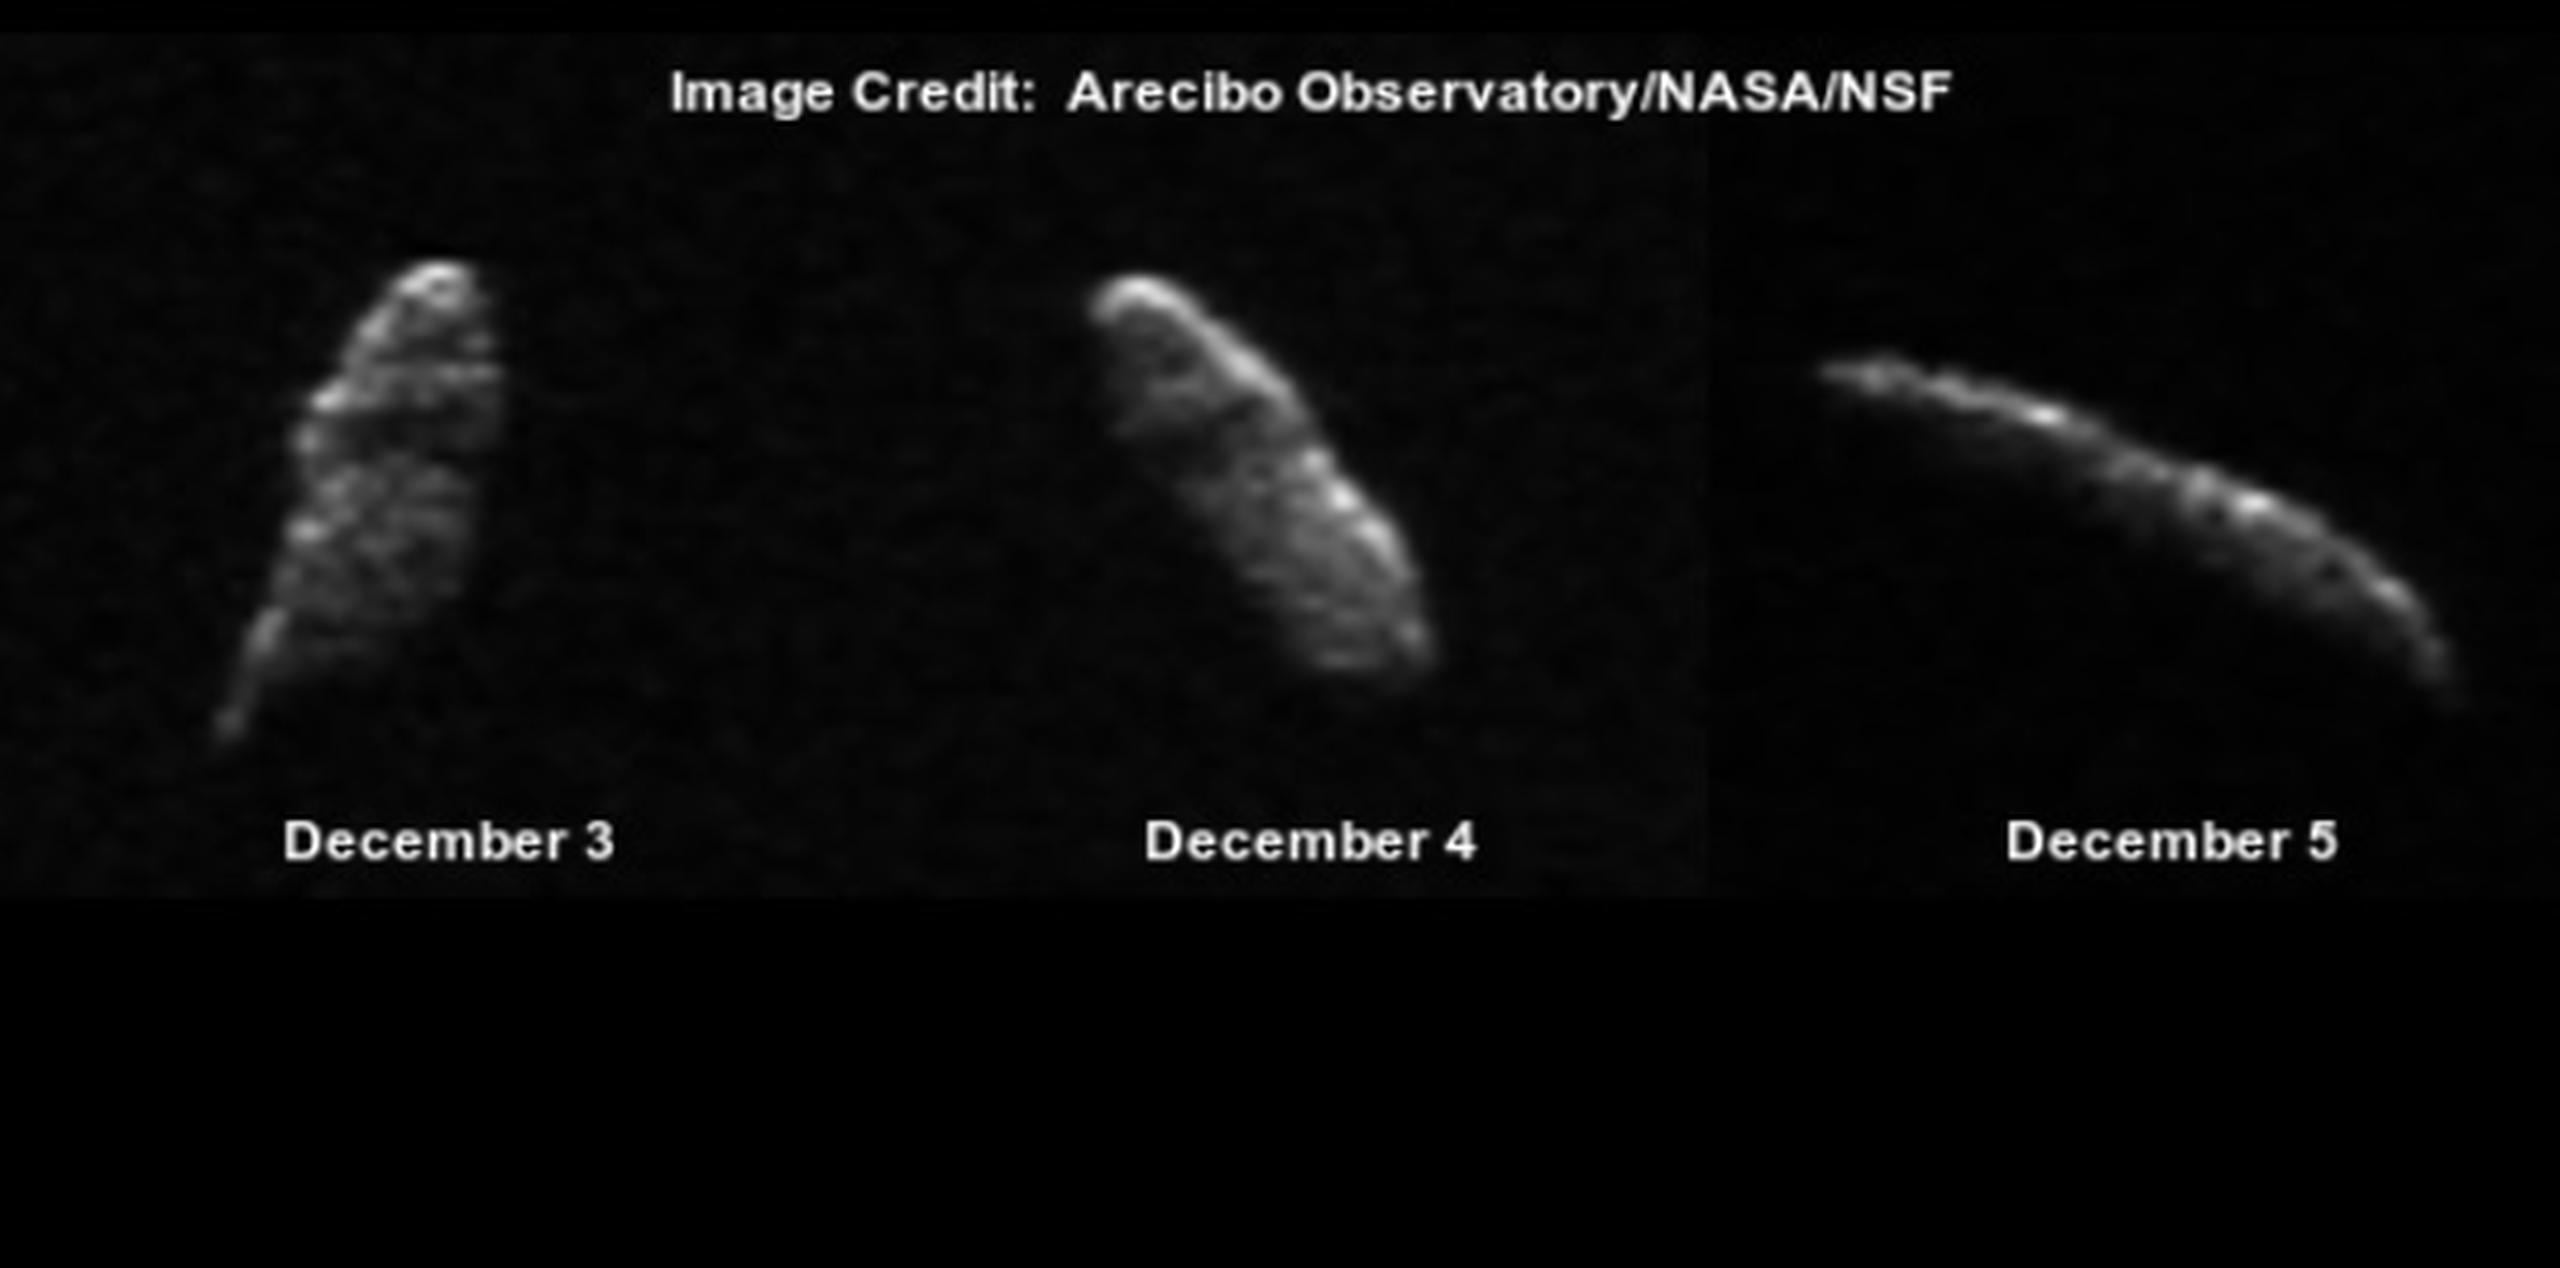 La roca espacial con forma de “Chicken Tender” o de peculiar forma alargada, estaría en su punto más cercano a la Tierra el 24 de diciembre. (Observatorio de Arecibo/NASA/NSF)